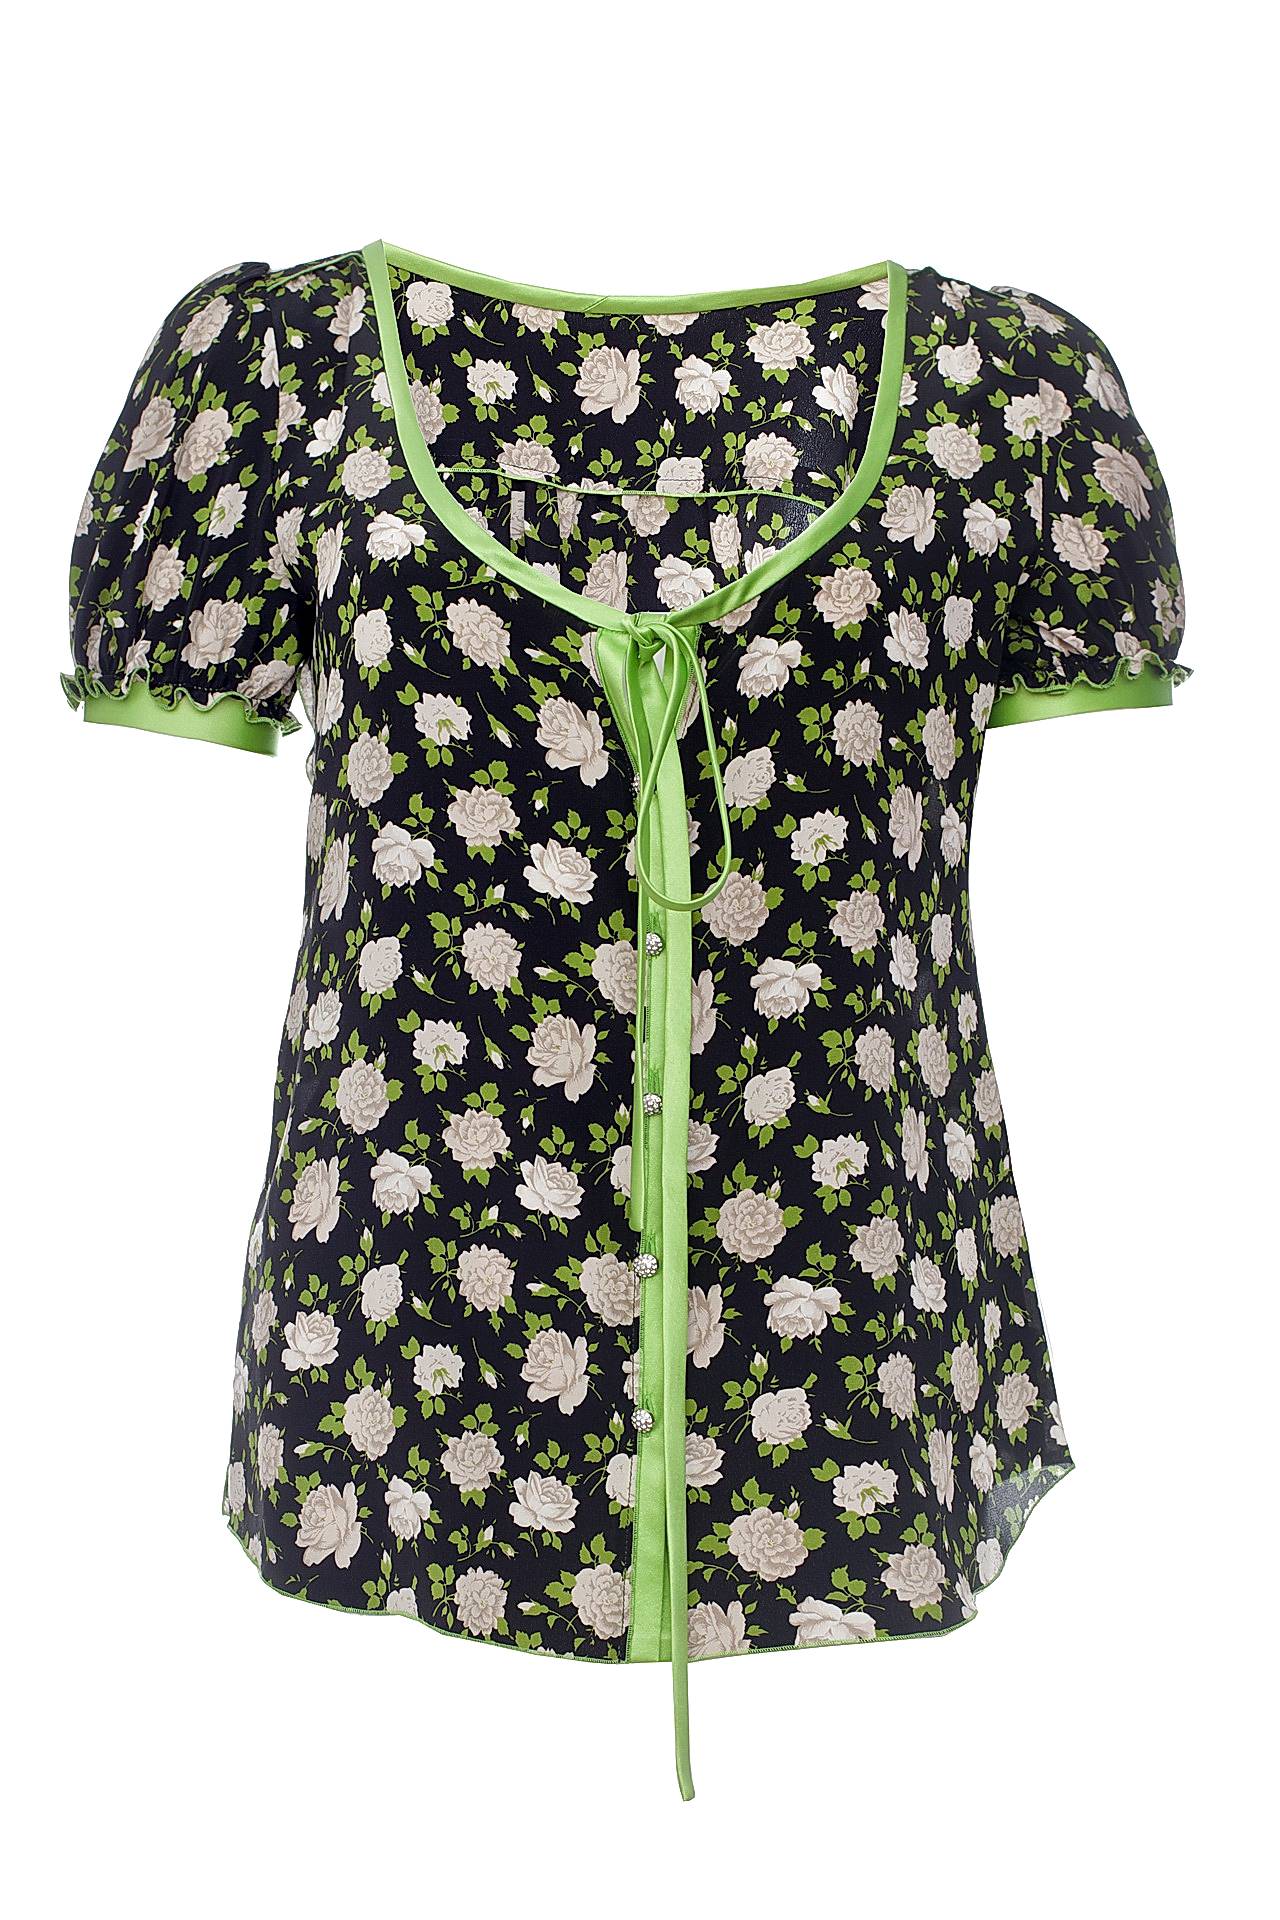 Одежда женская Блузка DOLCE & GABBANA (F5118TFS1BD/0010). Купить за 13160 руб.